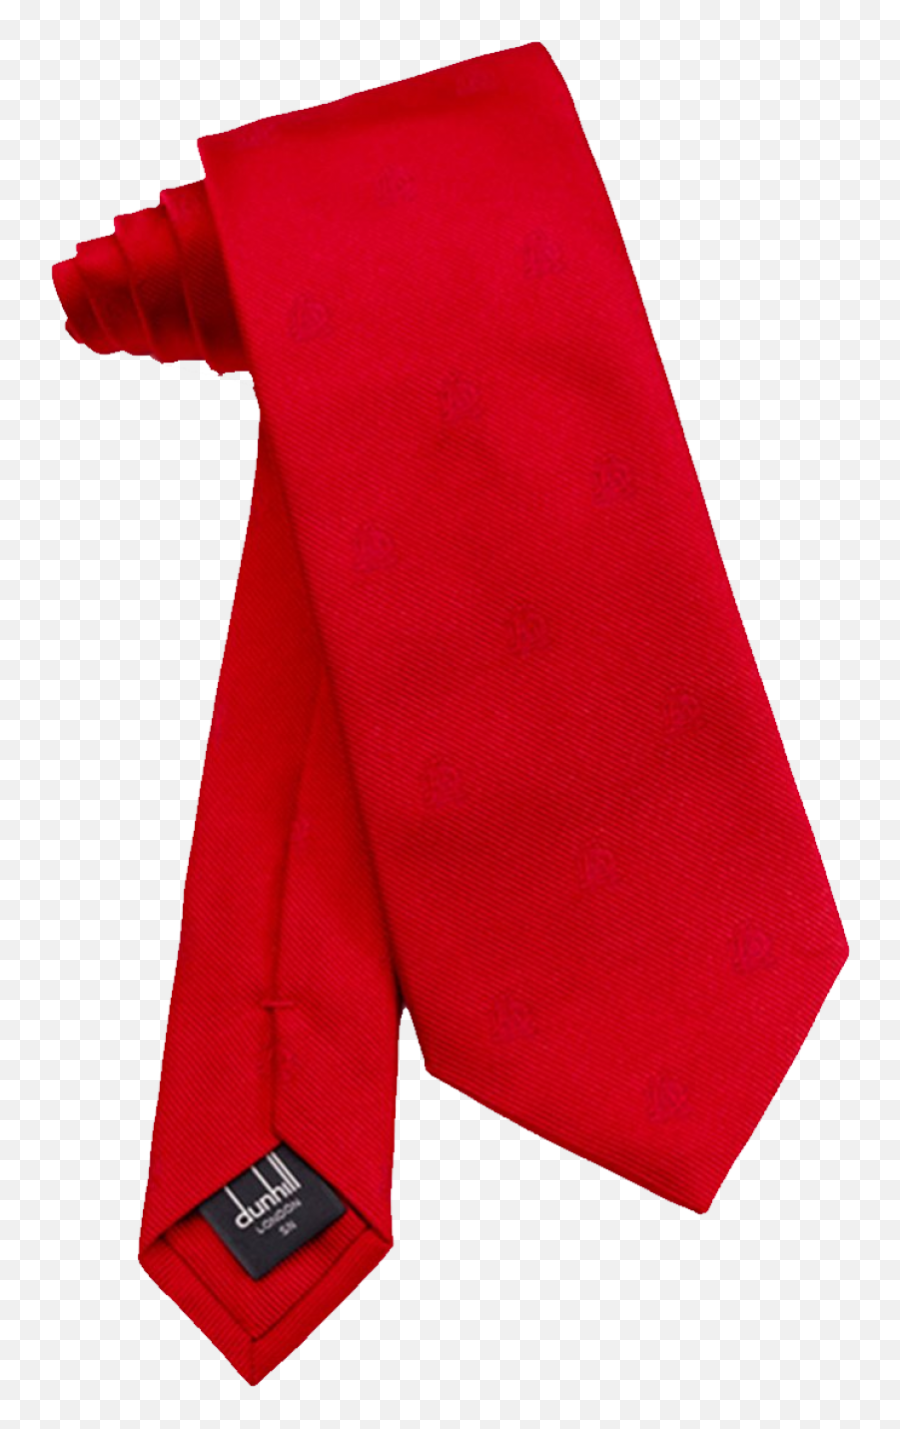 Red Tie Png Image - Red Tie Png,Red Tie Png